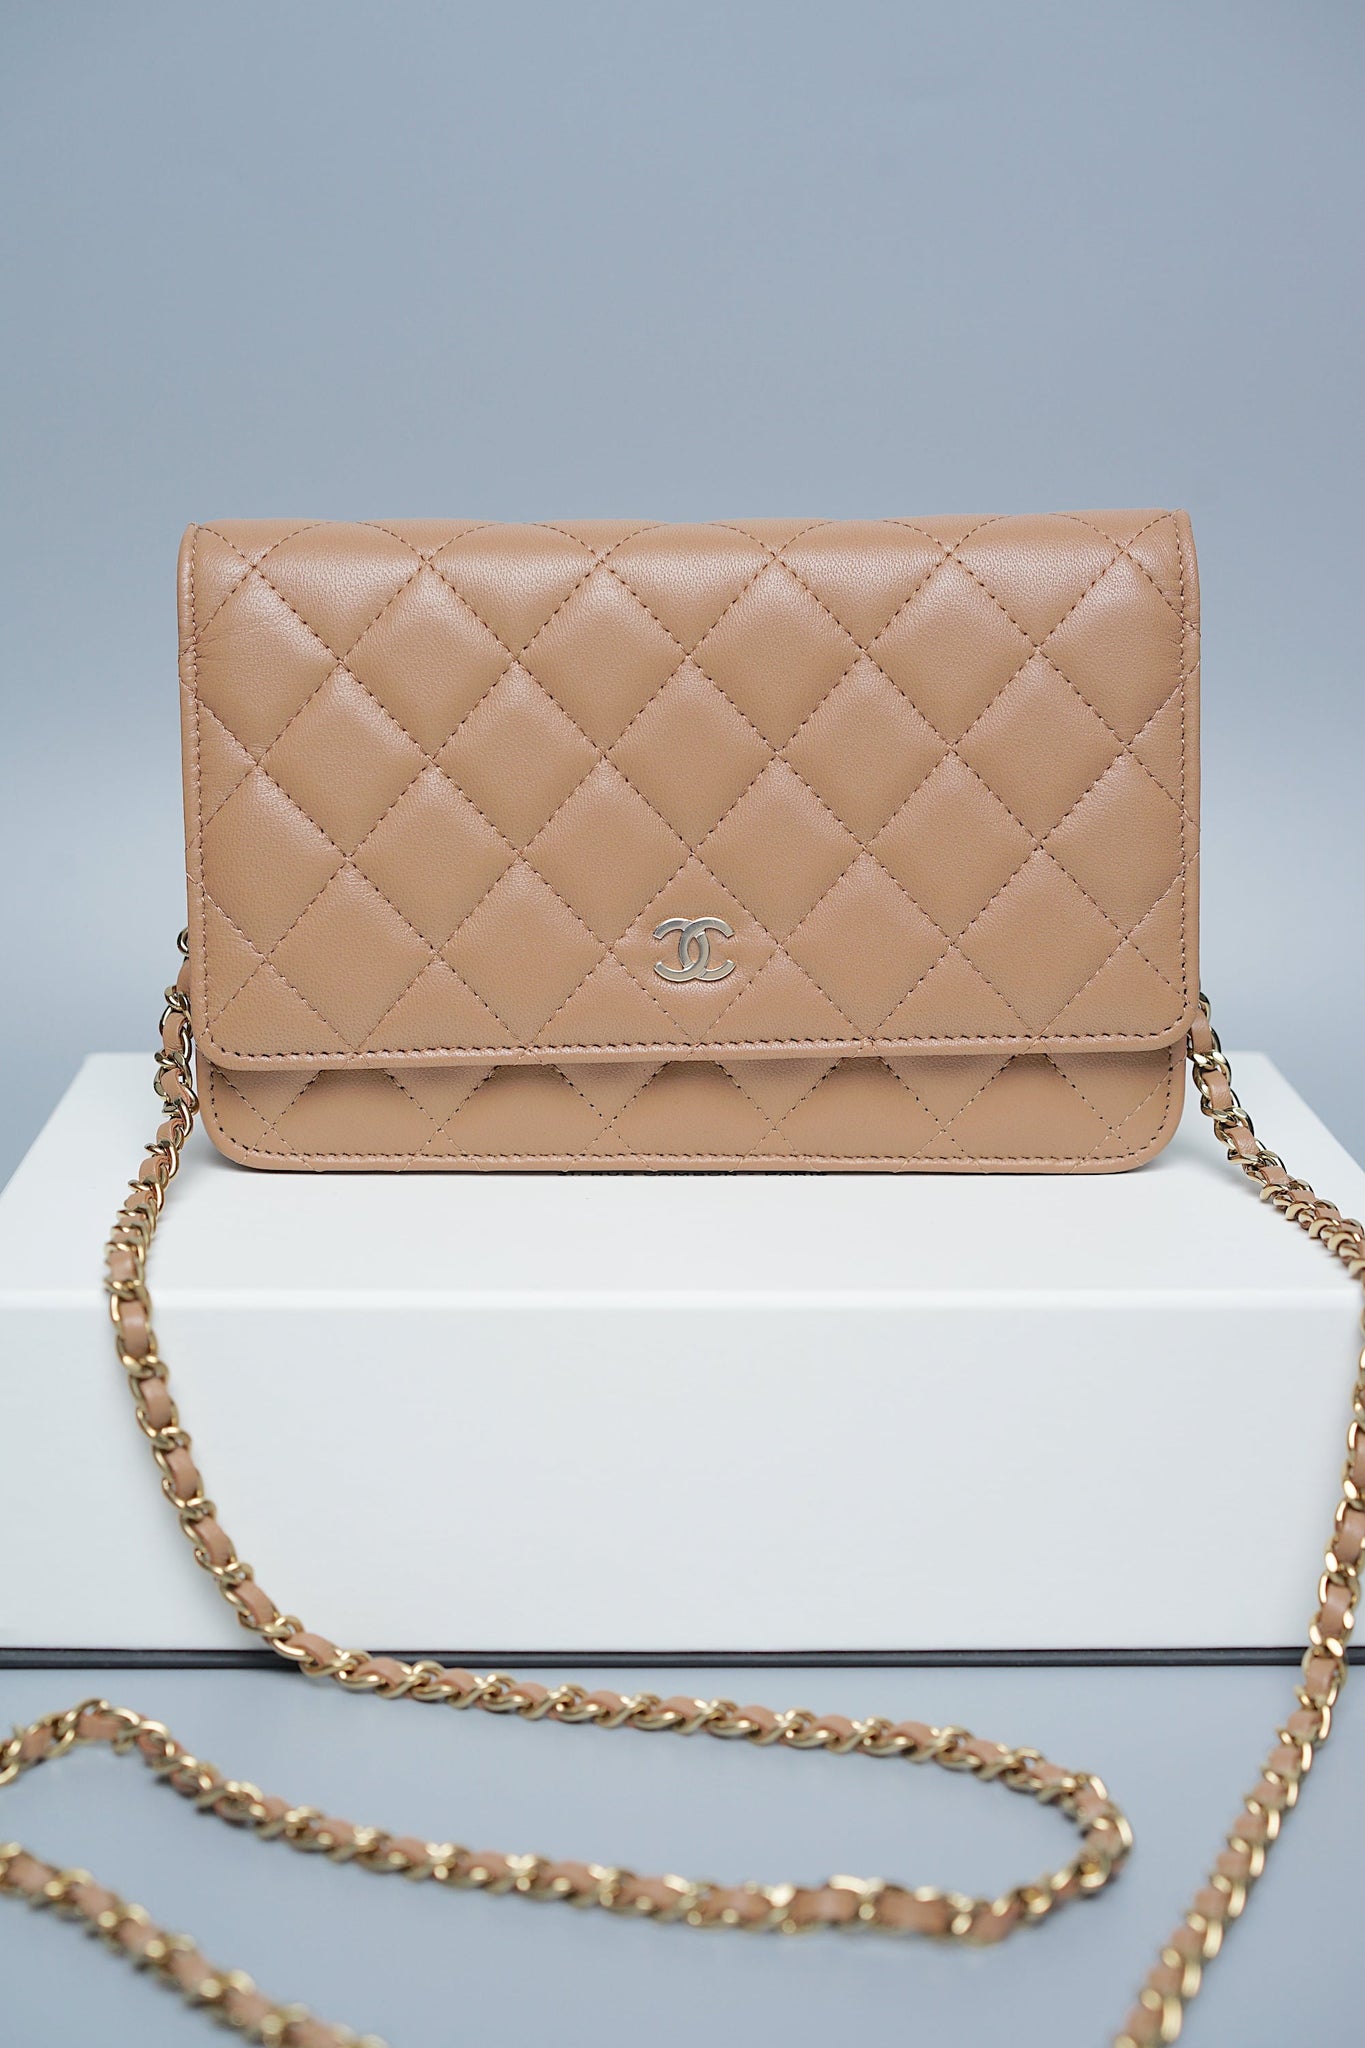 Chanel Wallet On Chain in Dark Beige (Brand New)